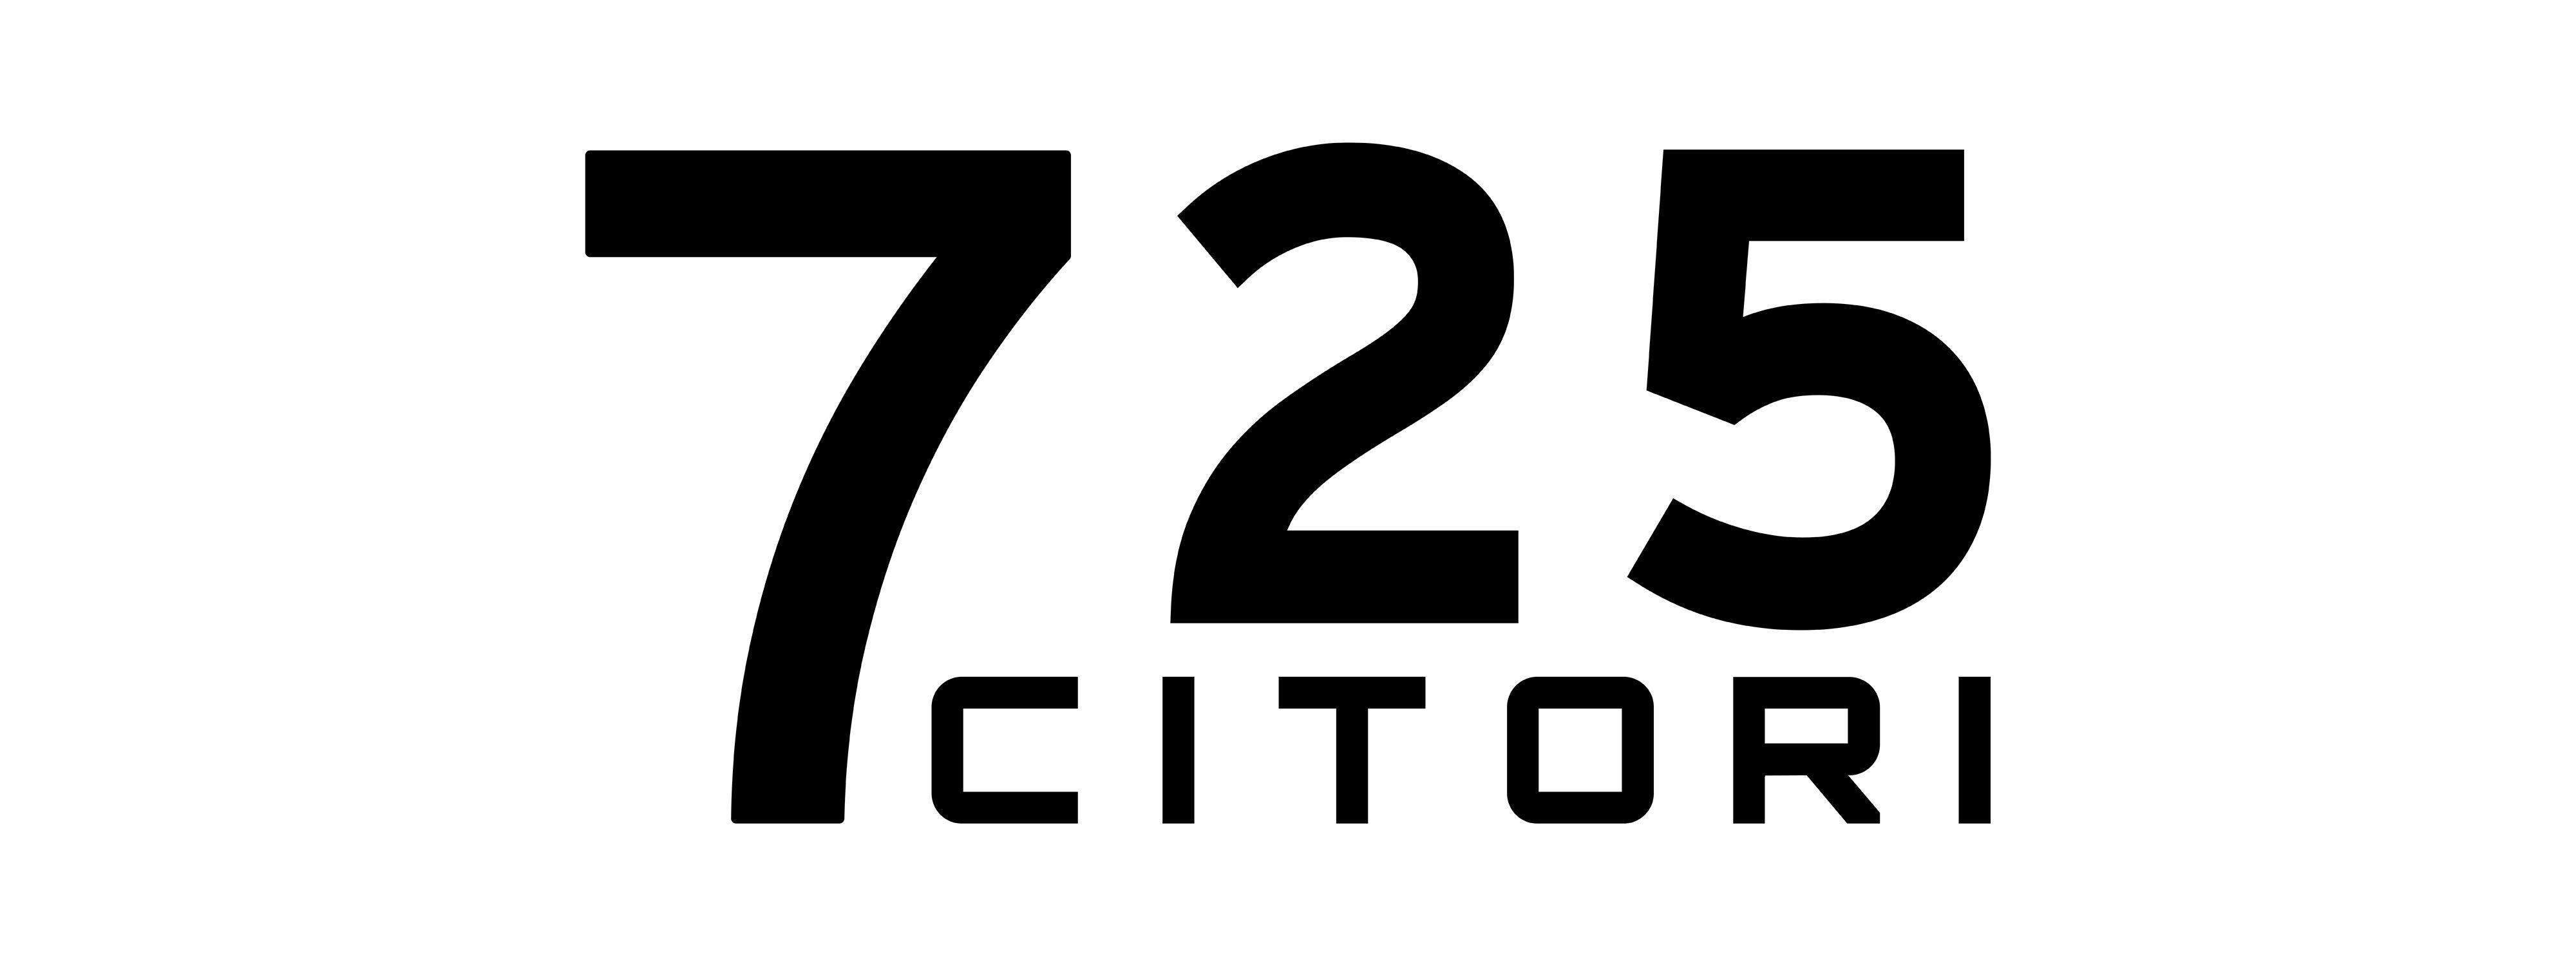 Citori 725 Logo